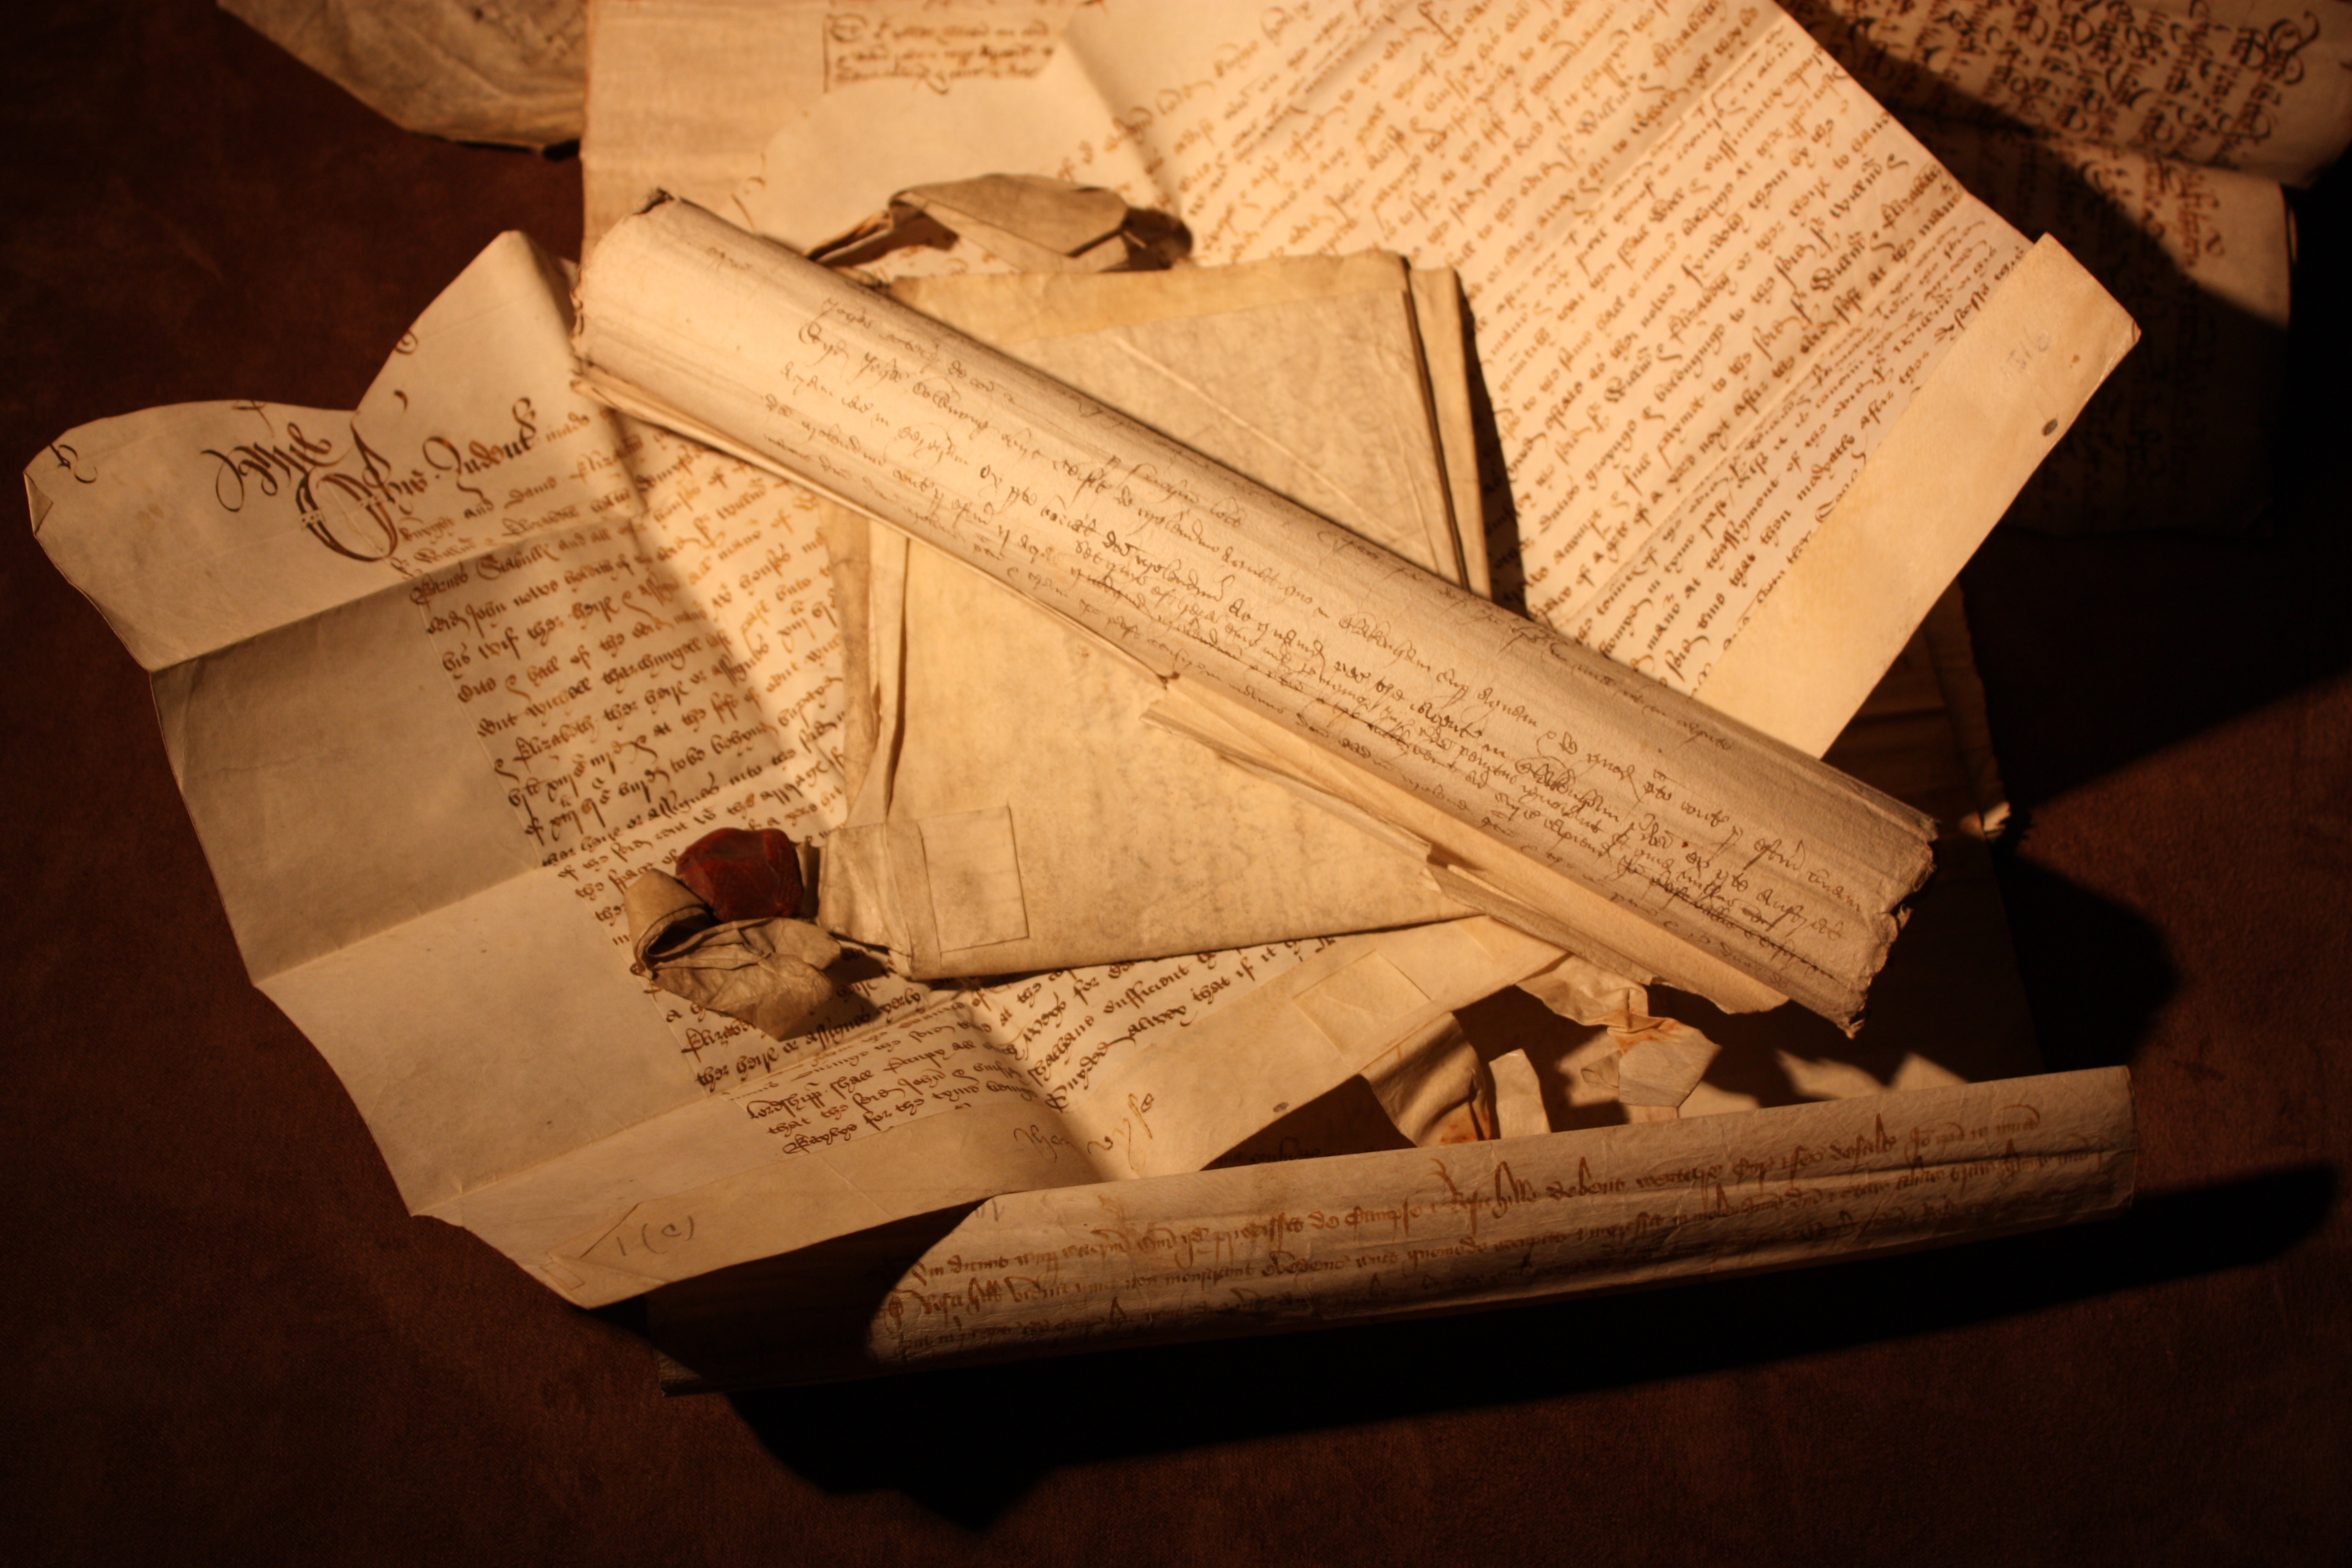 papirruller og store arkflater med håndskrevet tekst